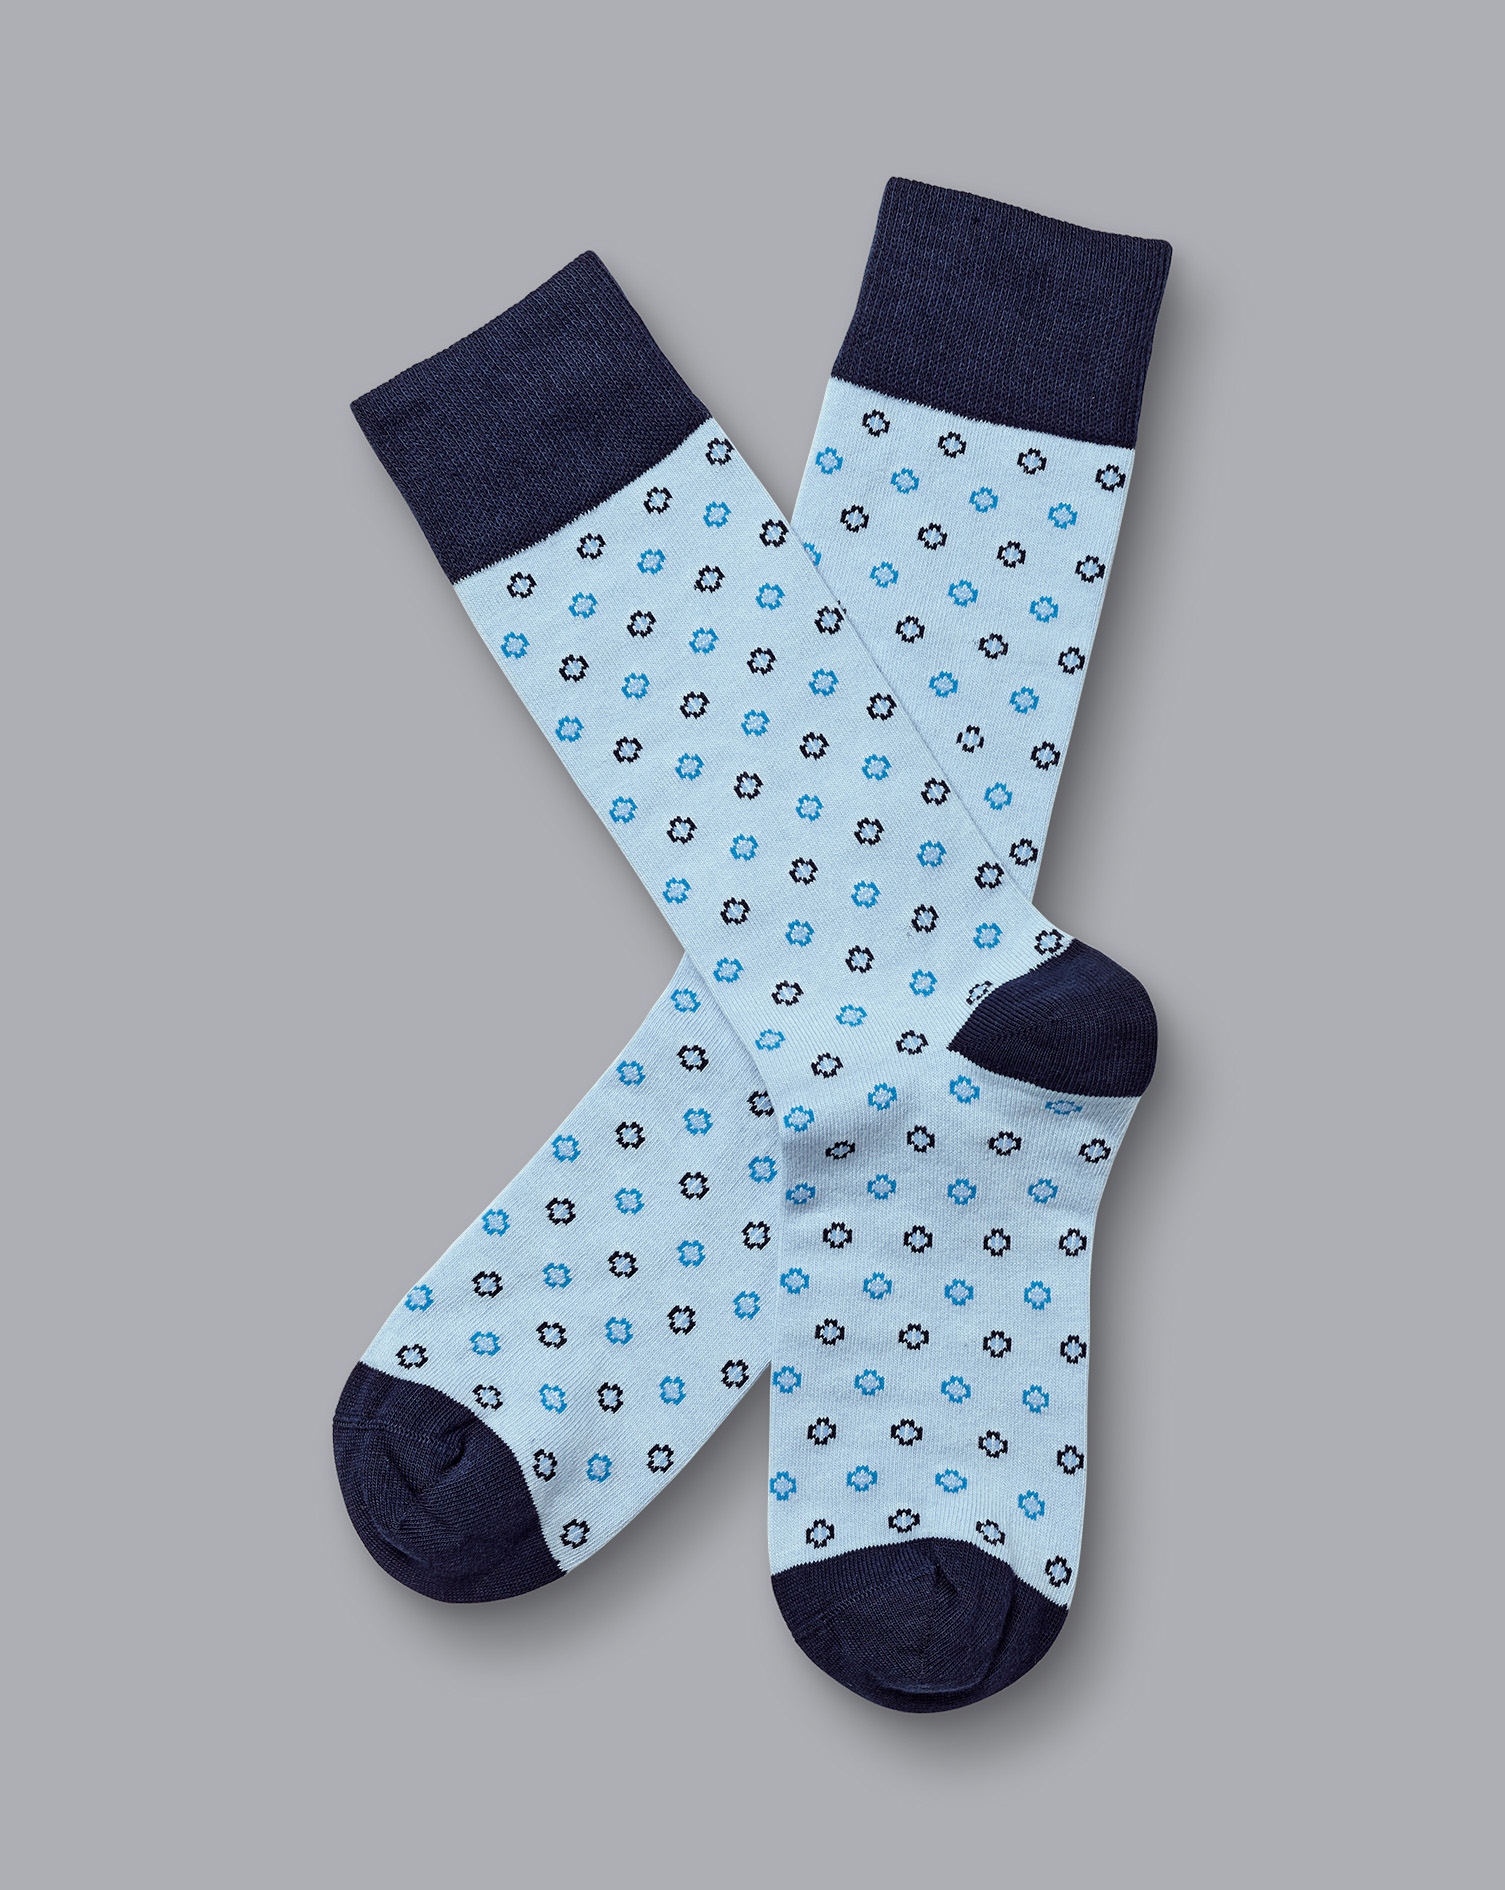 Men's Charles Tyrwhitt Geo Socks - Light Blue Size 10.5-13
